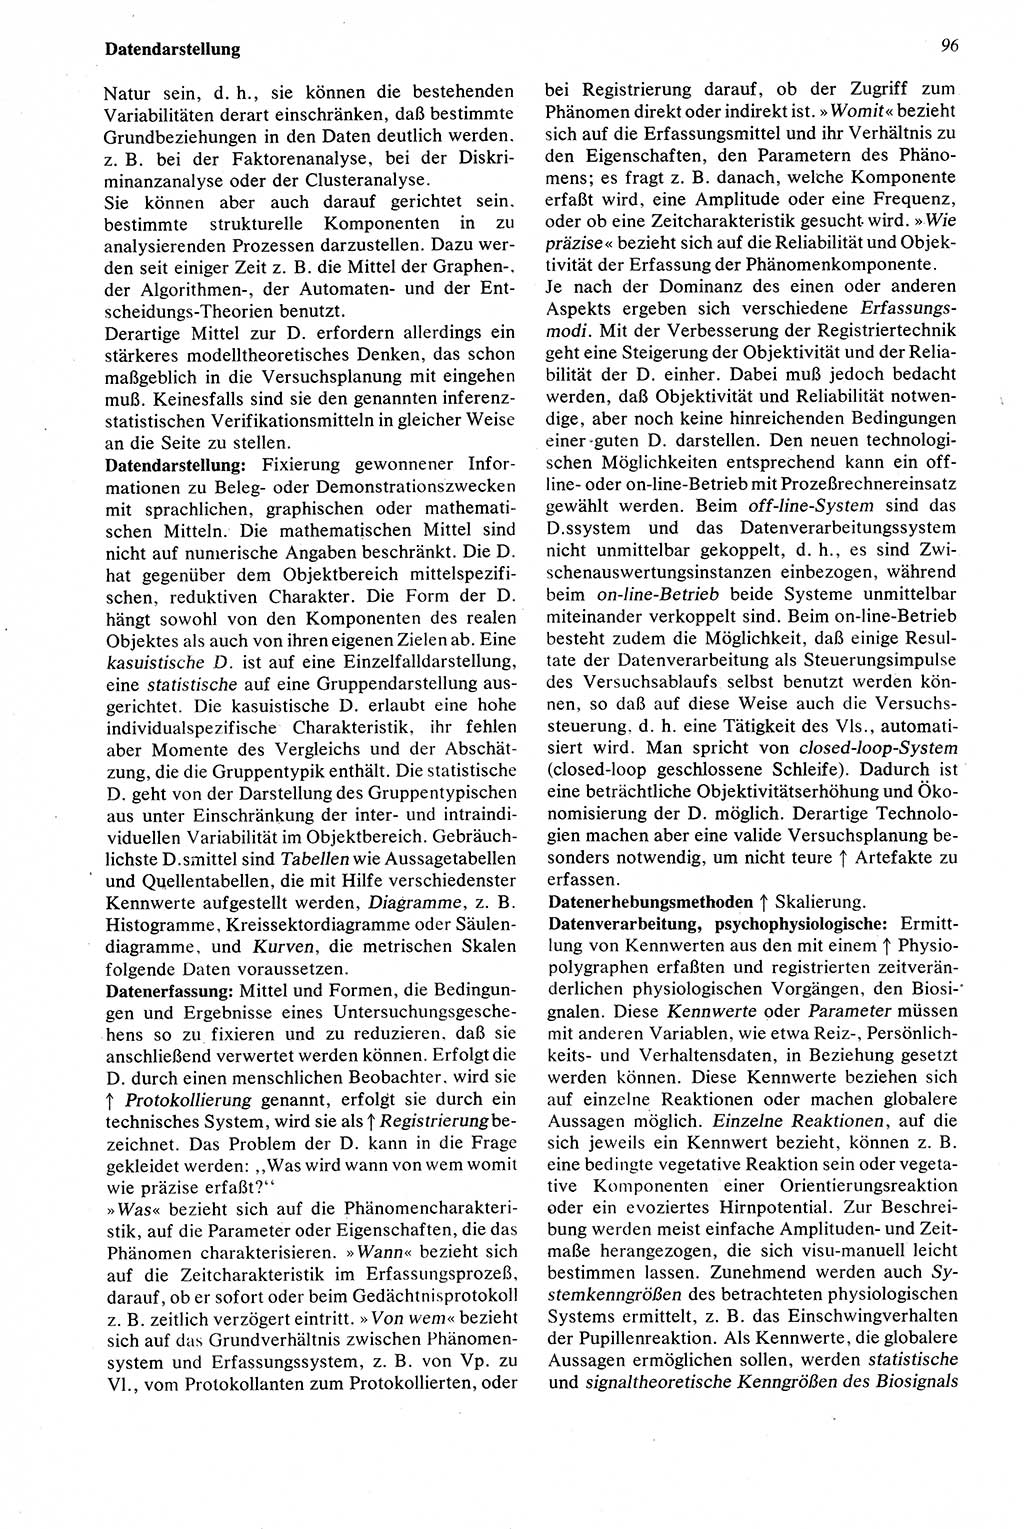 Wörterbuch der Psychologie [Deutsche Demokratische Republik (DDR)] 1976, Seite 96 (Wb. Psych. DDR 1976, S. 96)